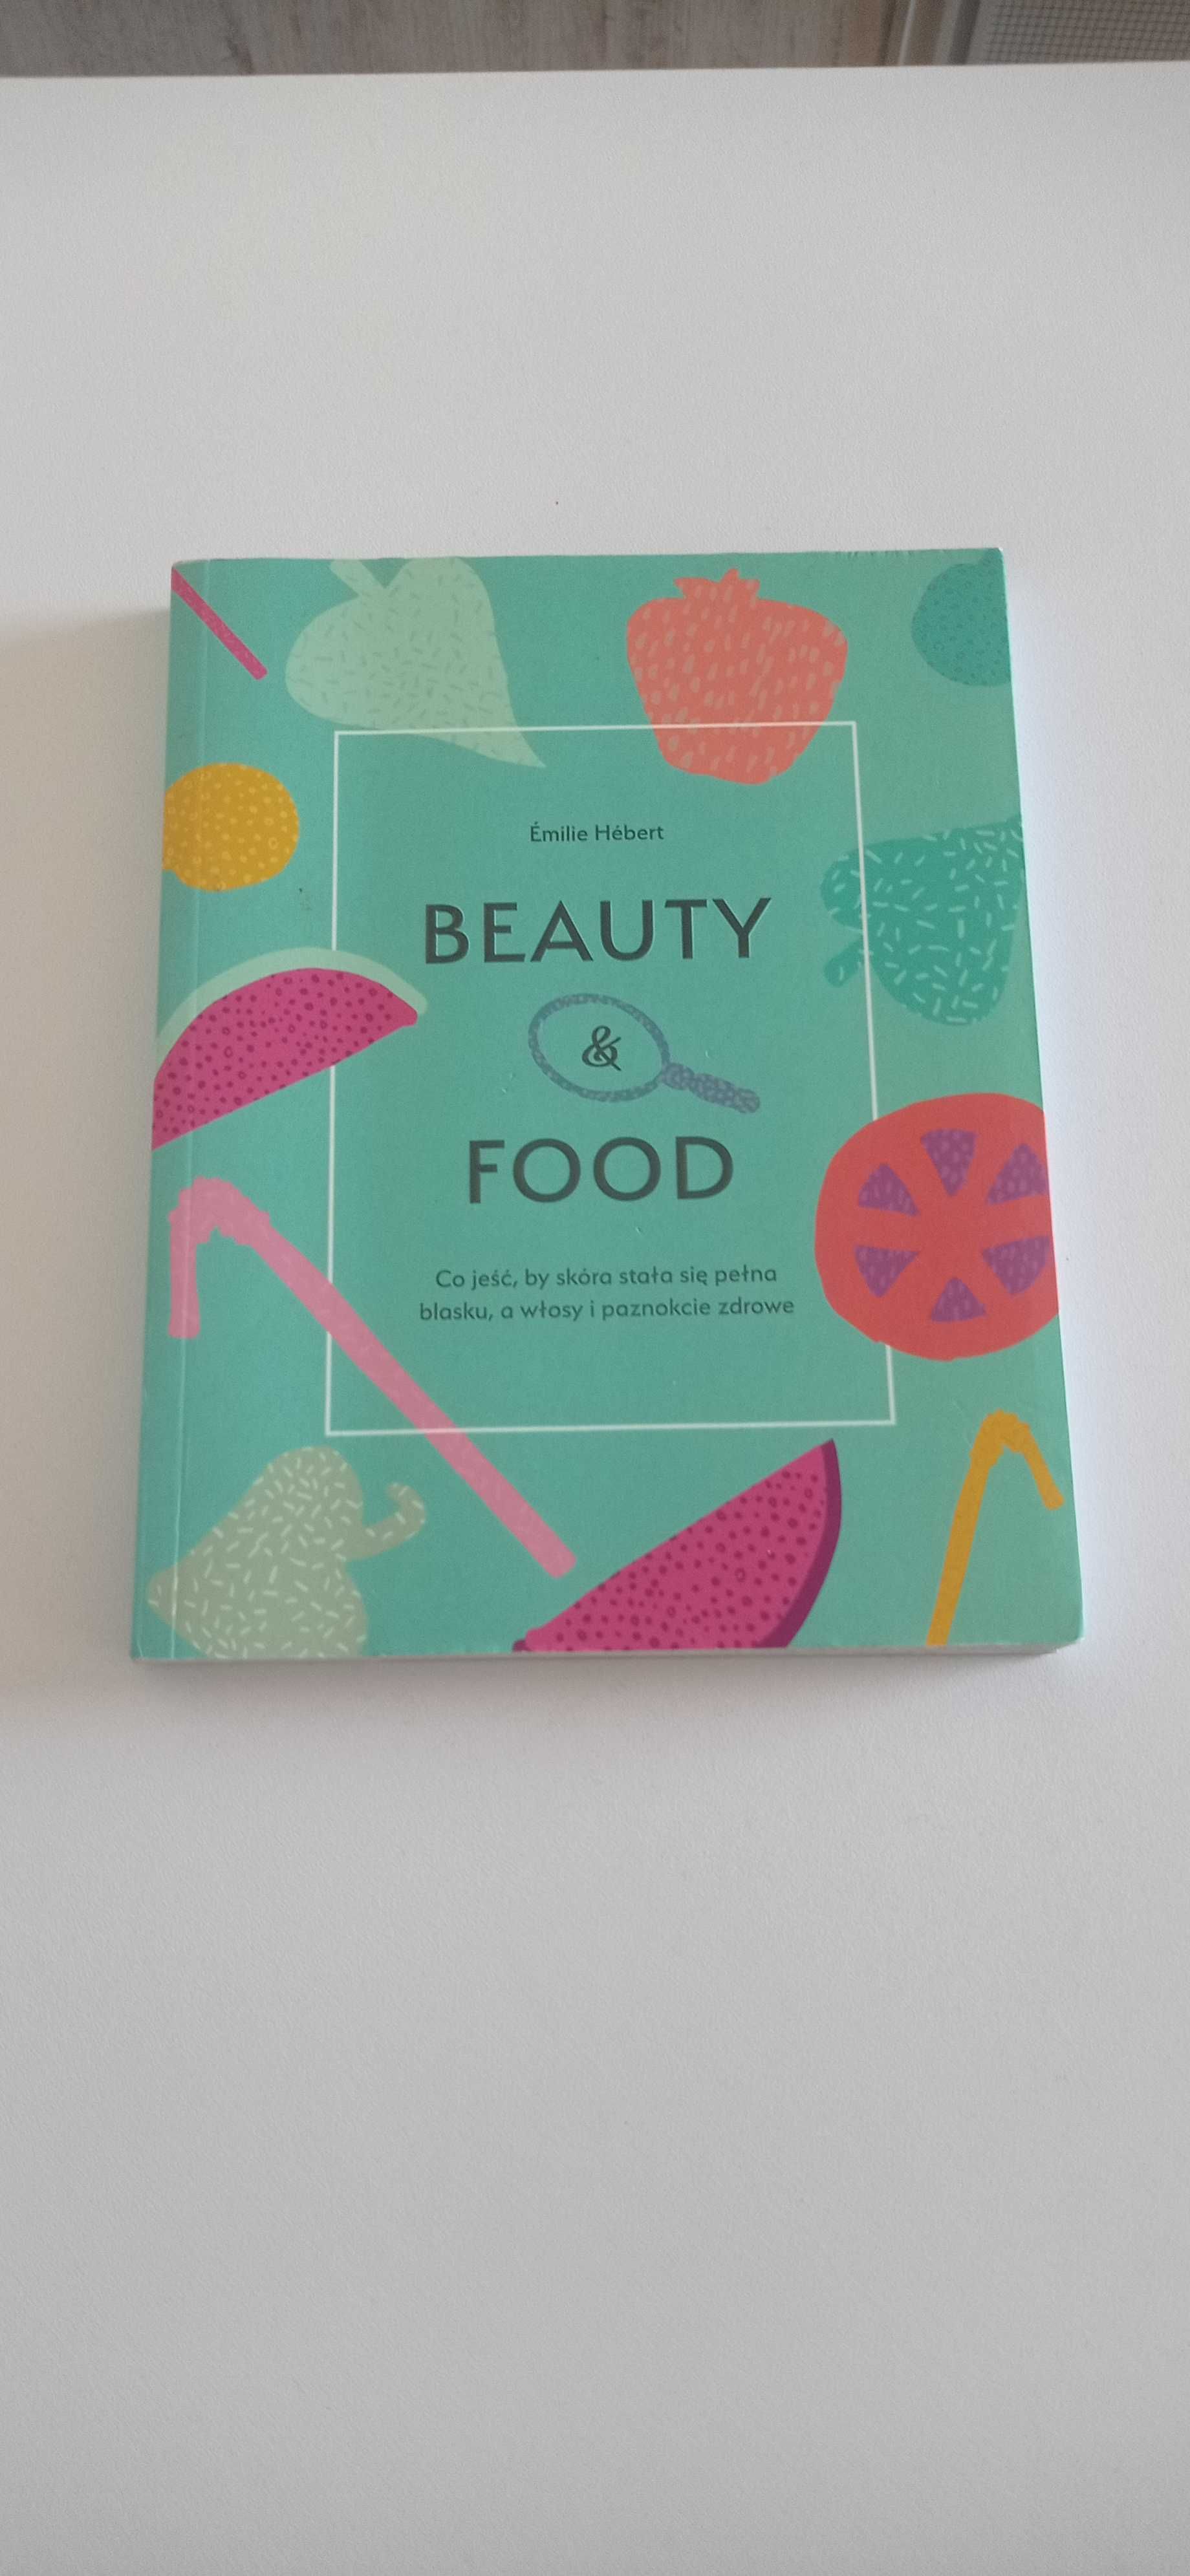 Beauty & food. Emilie Herbert